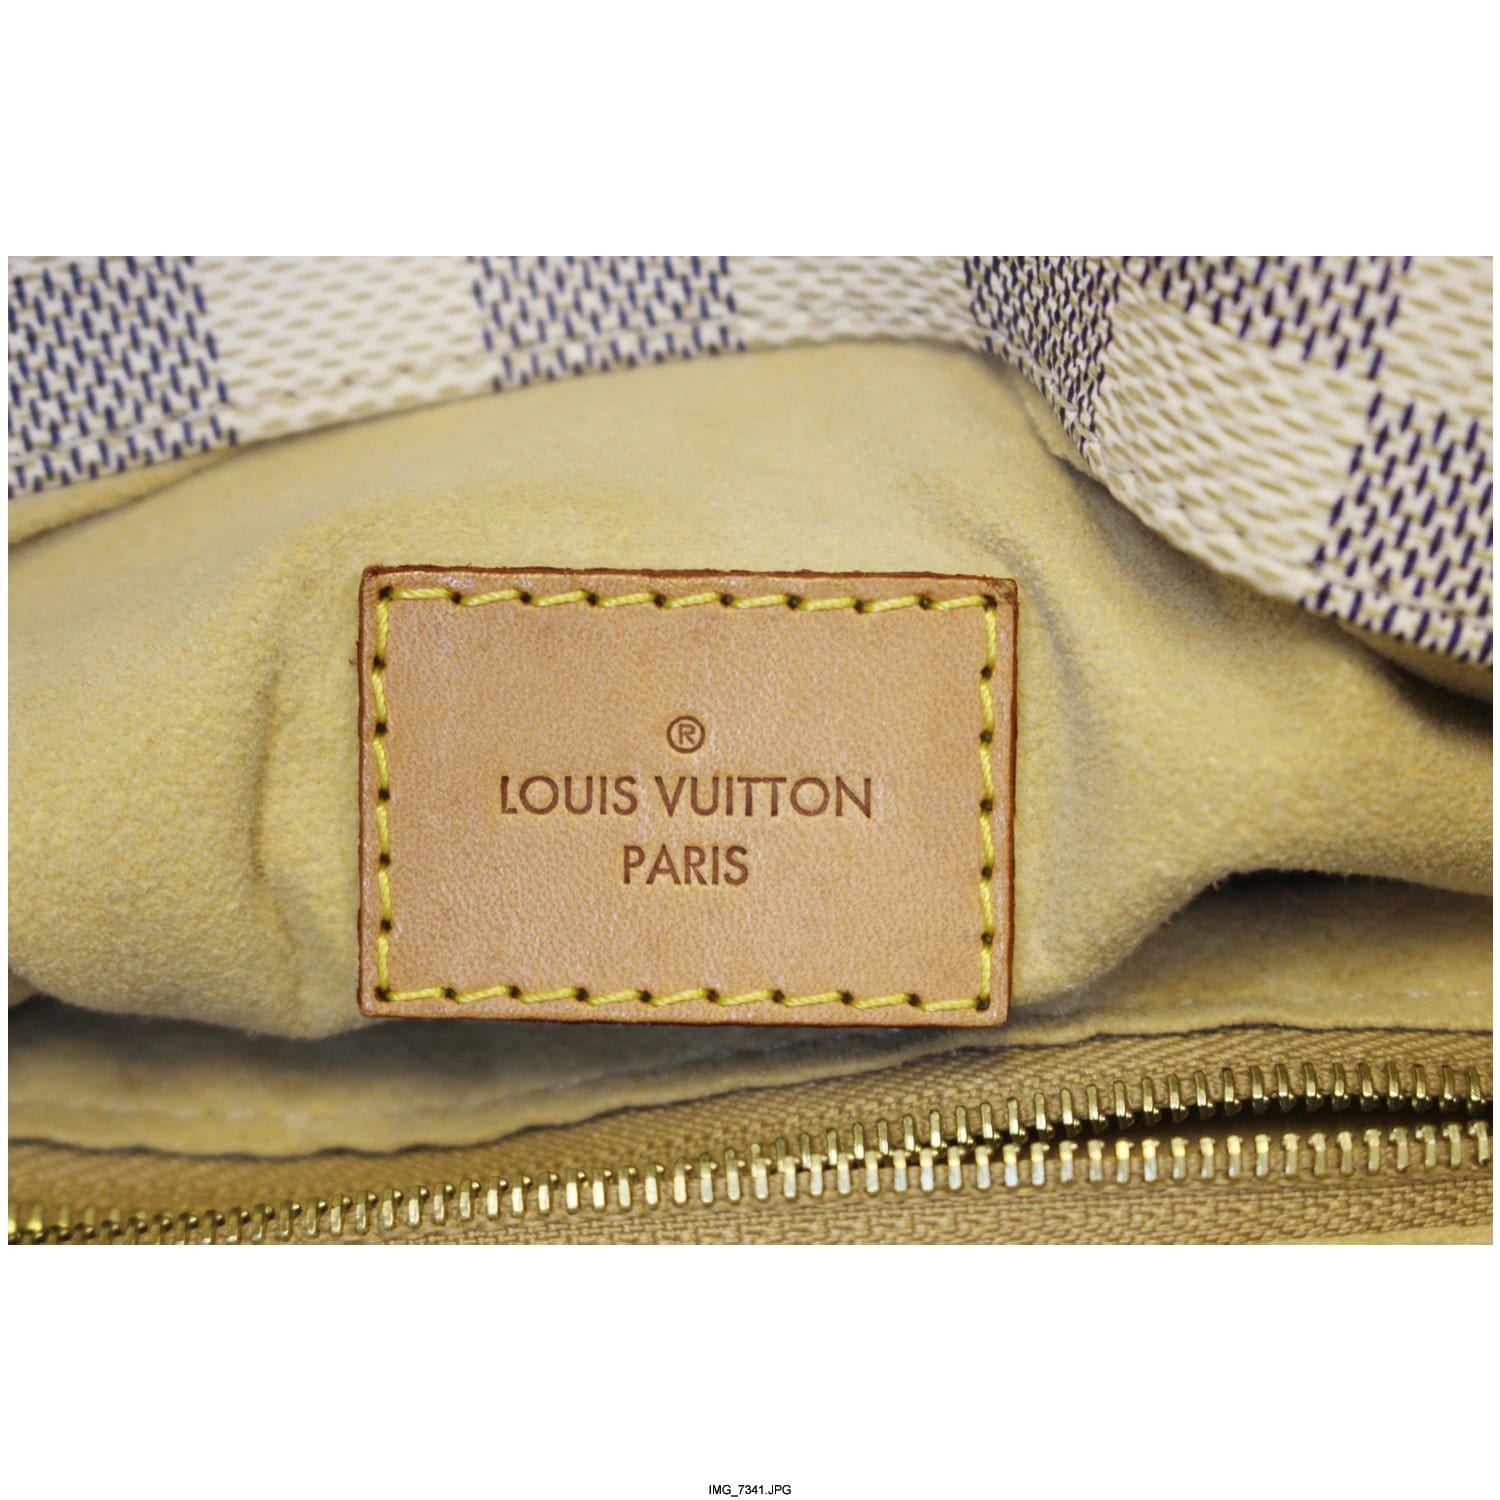 Louis Vuitton, Large Artsy Damier Azur Canvas Bag, cream…